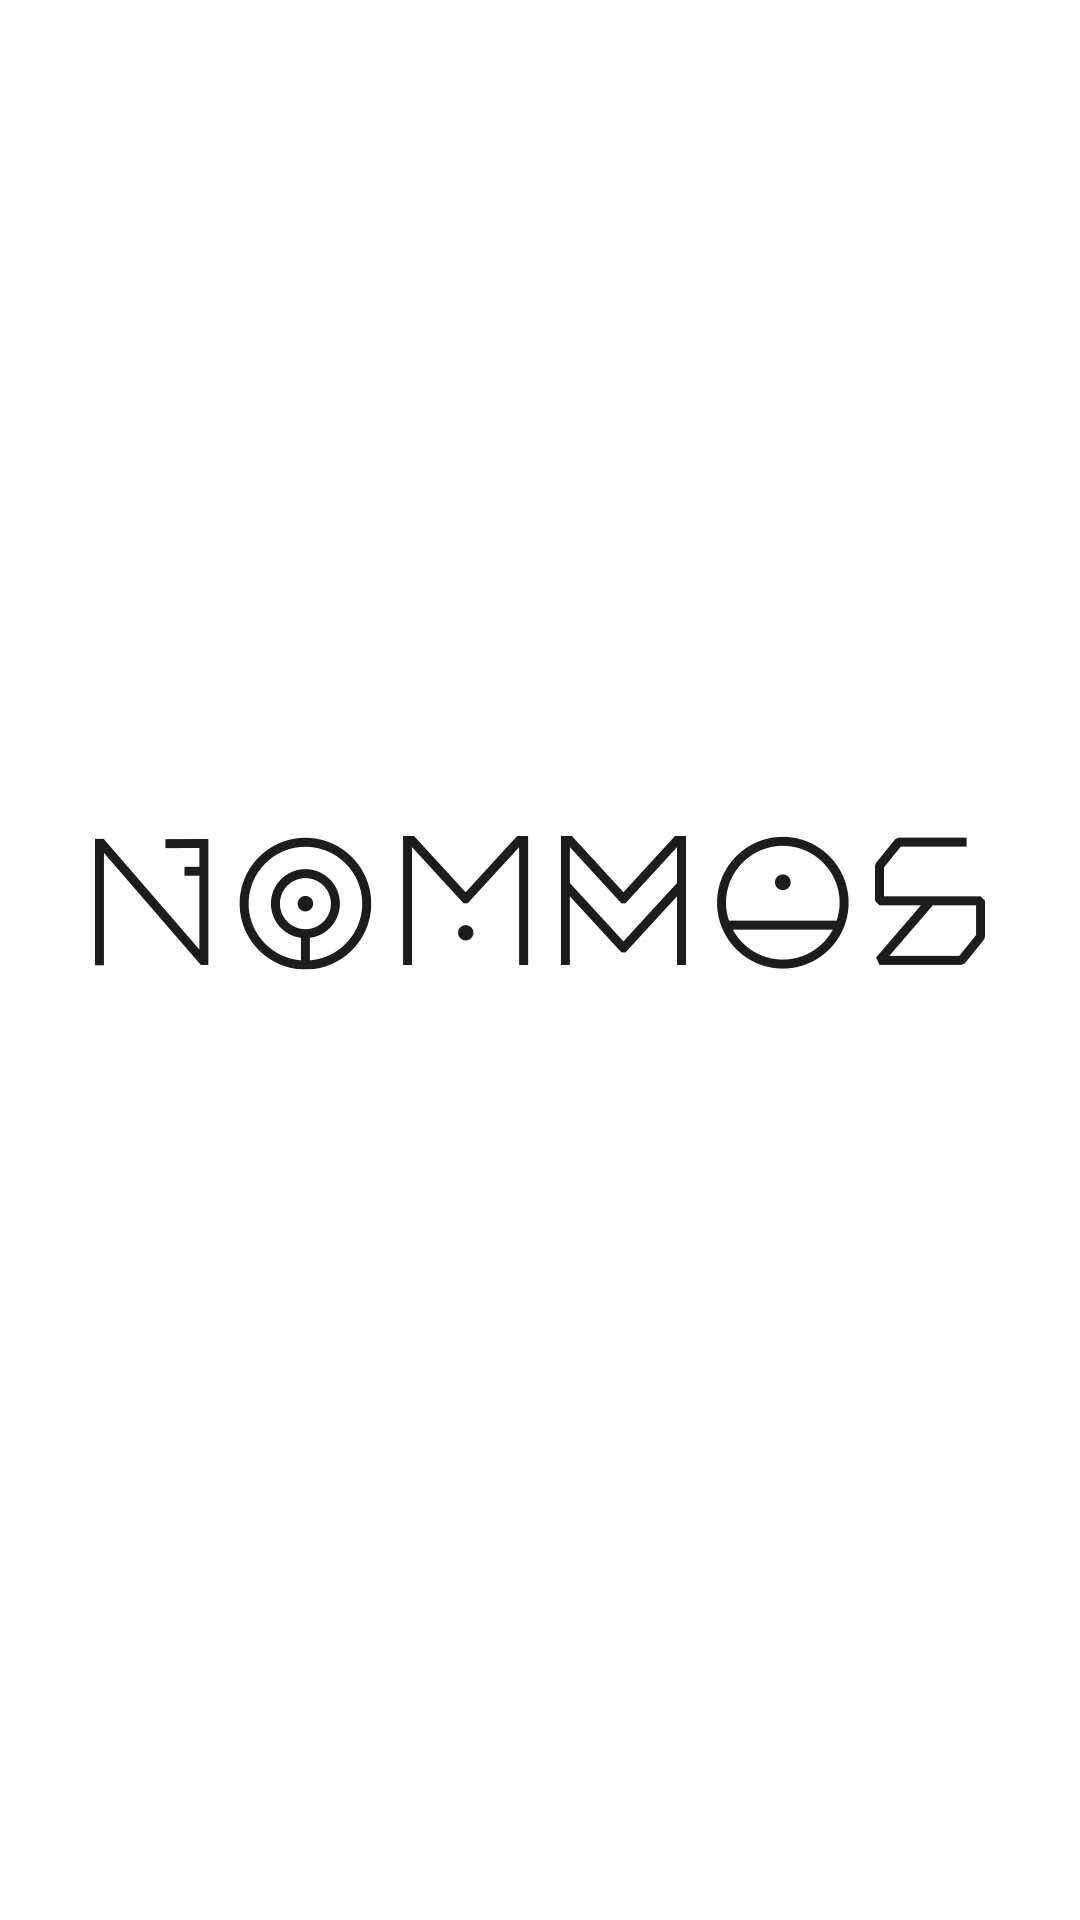 200116_Highlight_Logo_Nommos_06.jpg